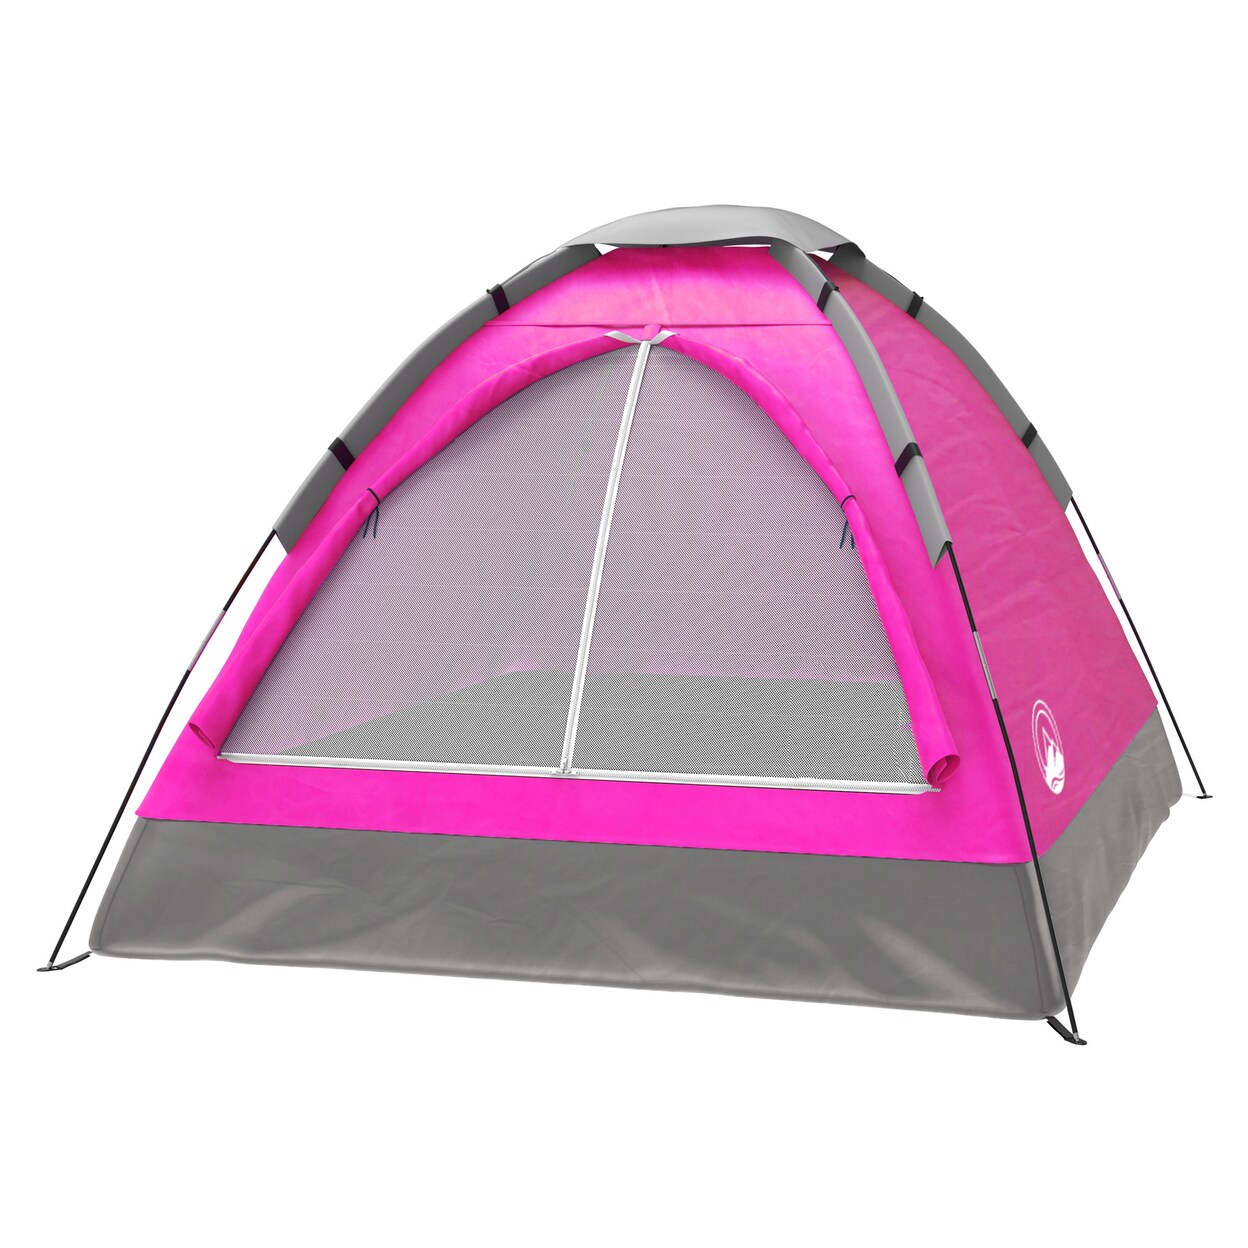 Wakeman Backyard Princess Pink Camping Tent Outdoor Playhouse Slumber Party Sleep Over